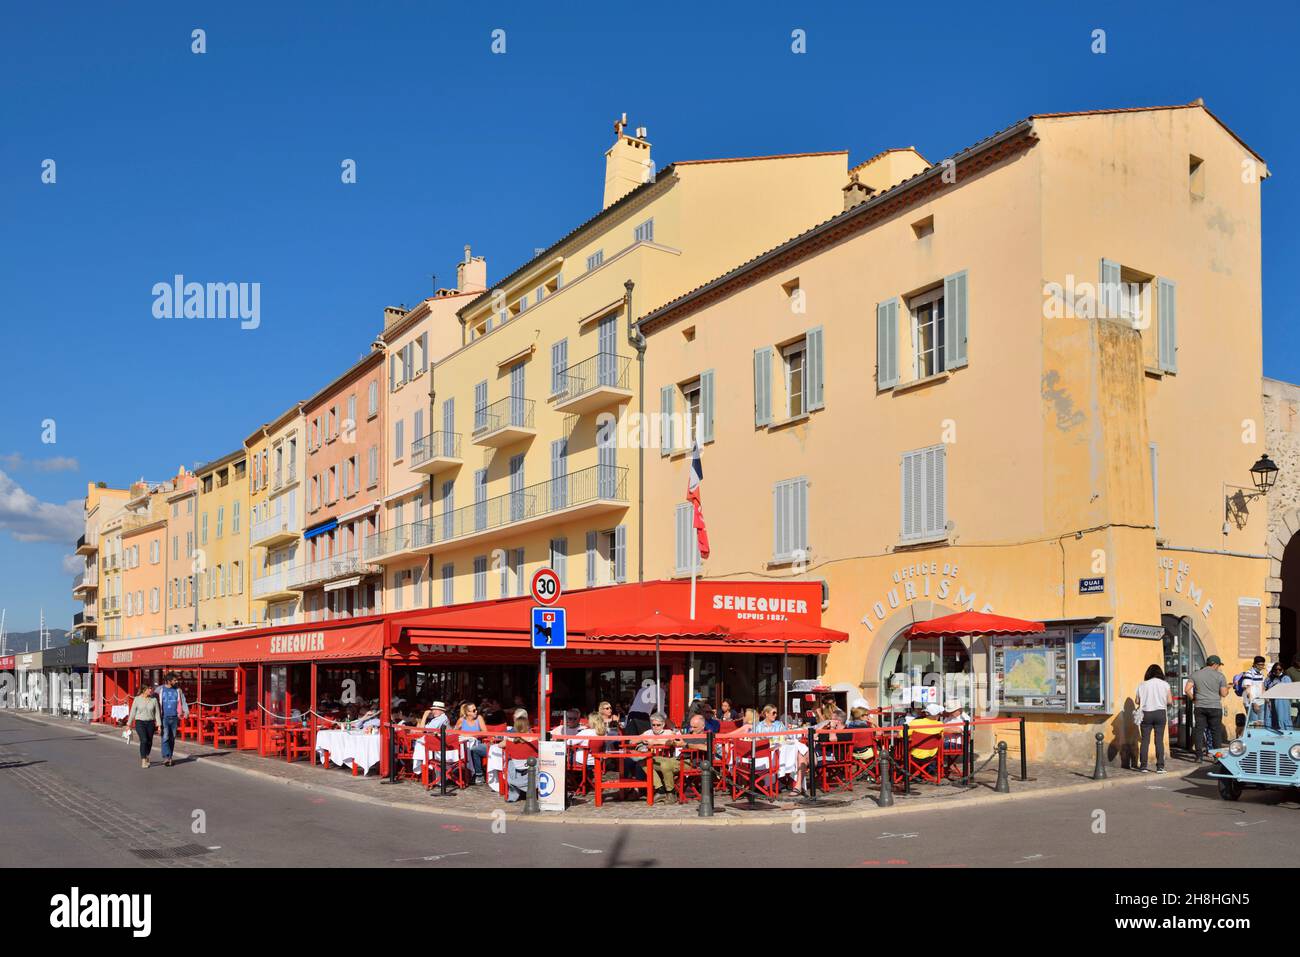 France, Var, Saint Tropez, quai Jean Jaures, Cafe Senequier founded in 1887 Stock Photo